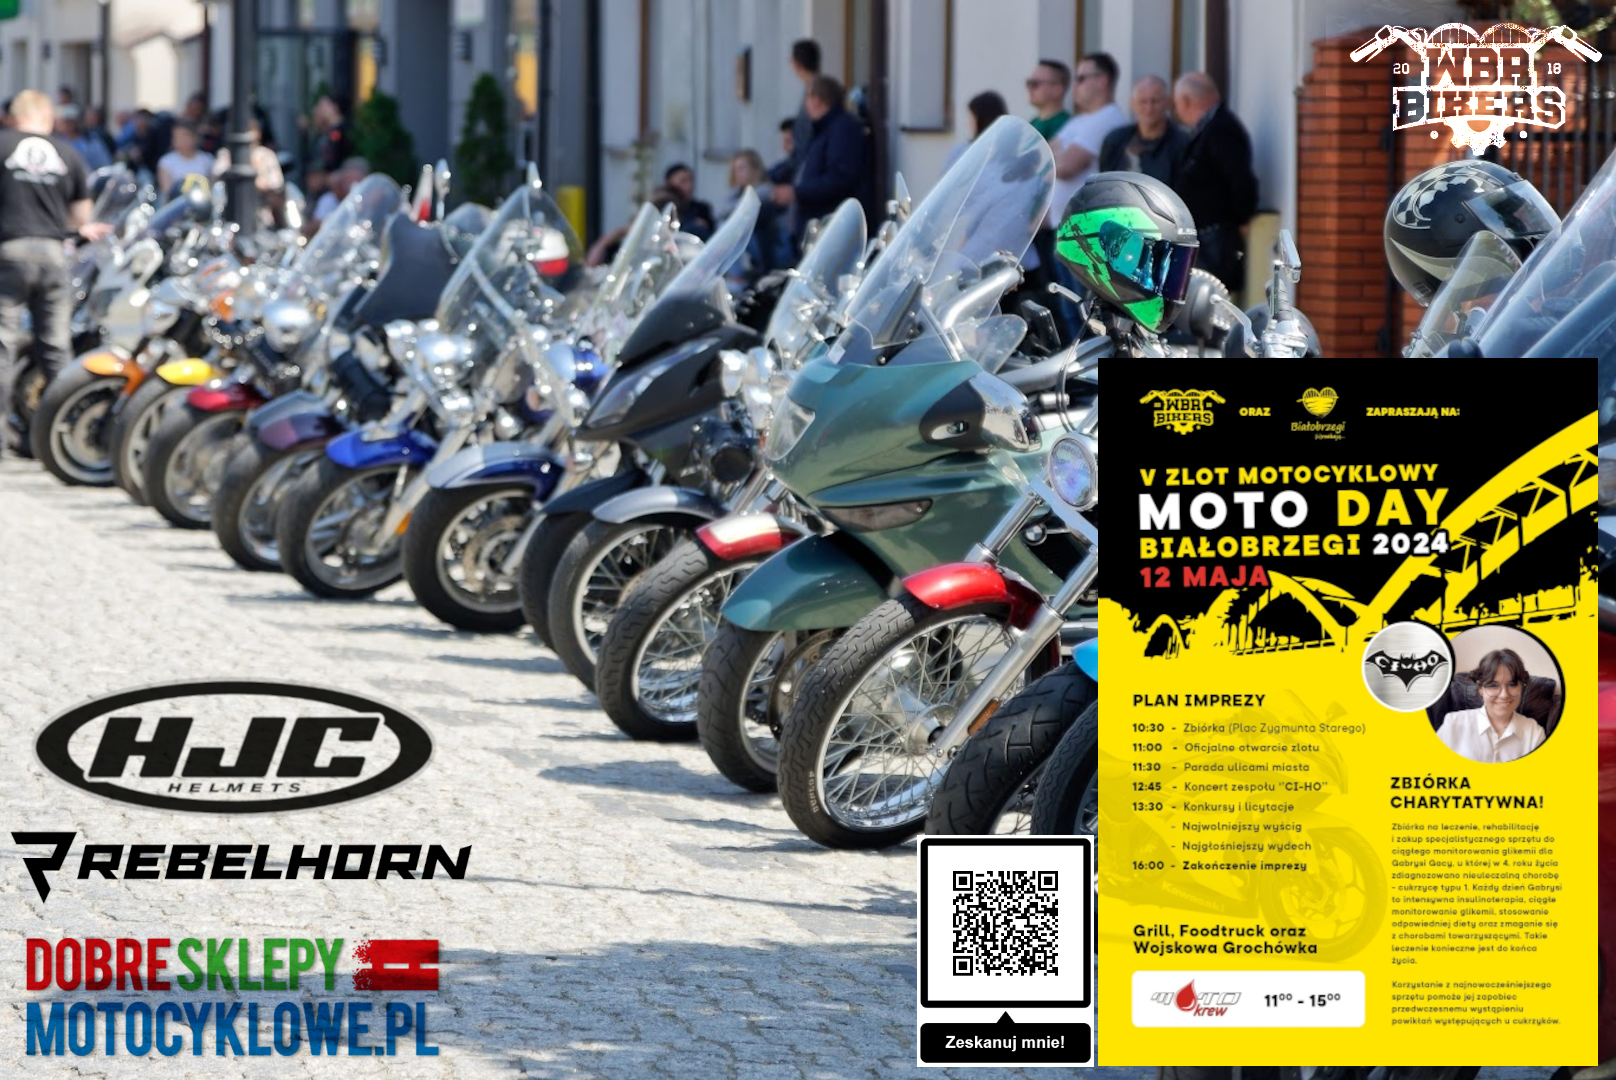 WBR BIKERS oraz BEST MOTORS zapraszają na V Zlot Motocyklowy Moto Day